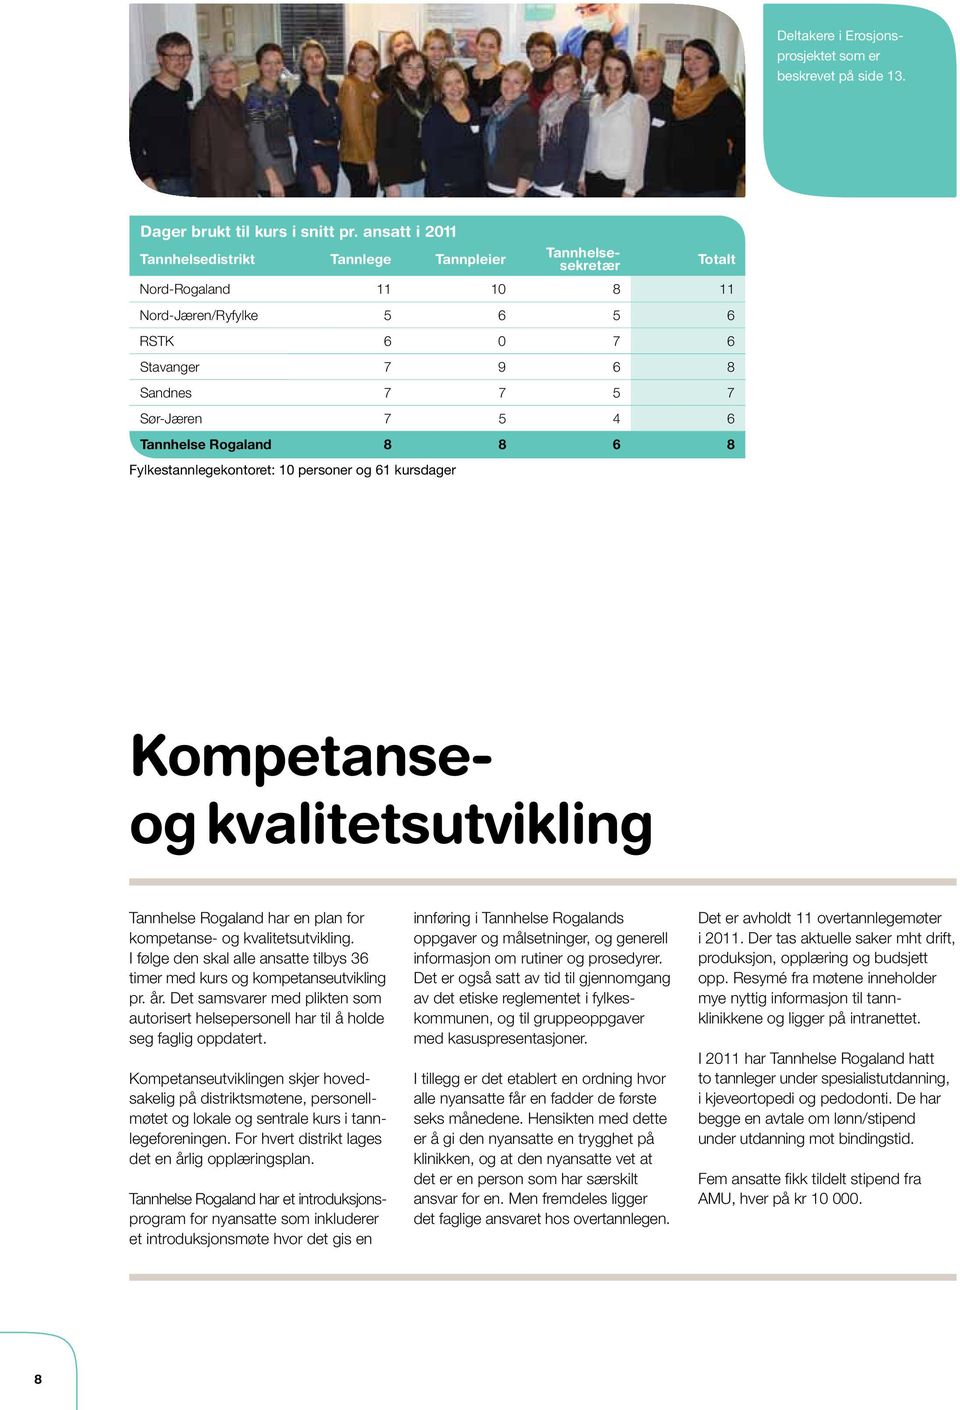 Tannhelse Rogaland 8 8 6 8 Fylkestannlegekontoret: 10 personer og 61 kursdager Kompetanseog kvalitetsutvikling Tannhelse Rogaland har en plan for kompetanse- og kvalitetsutvikling.